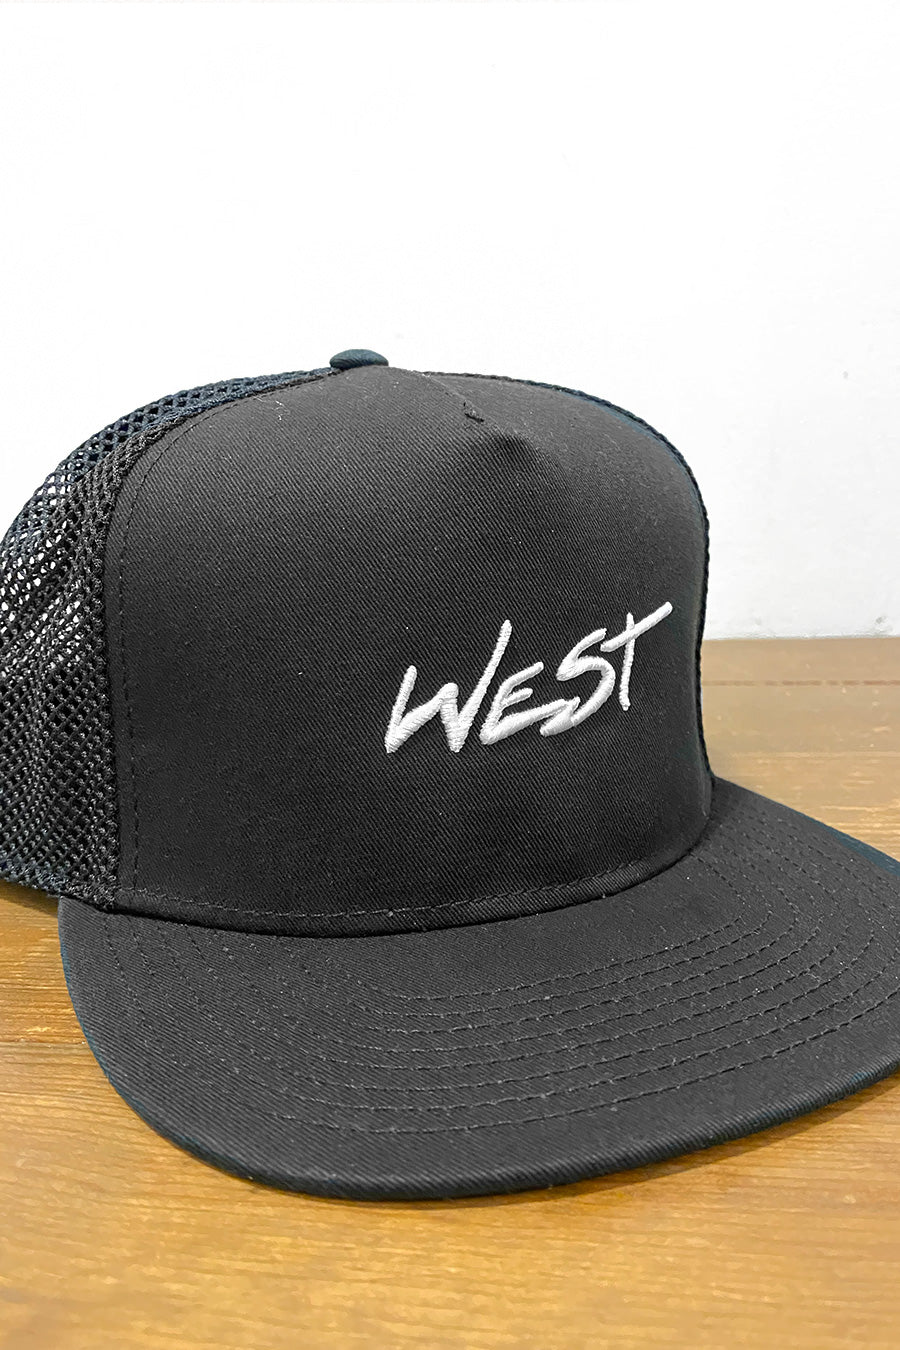 West Script Hat | Black - Main Image Number 2 of 2